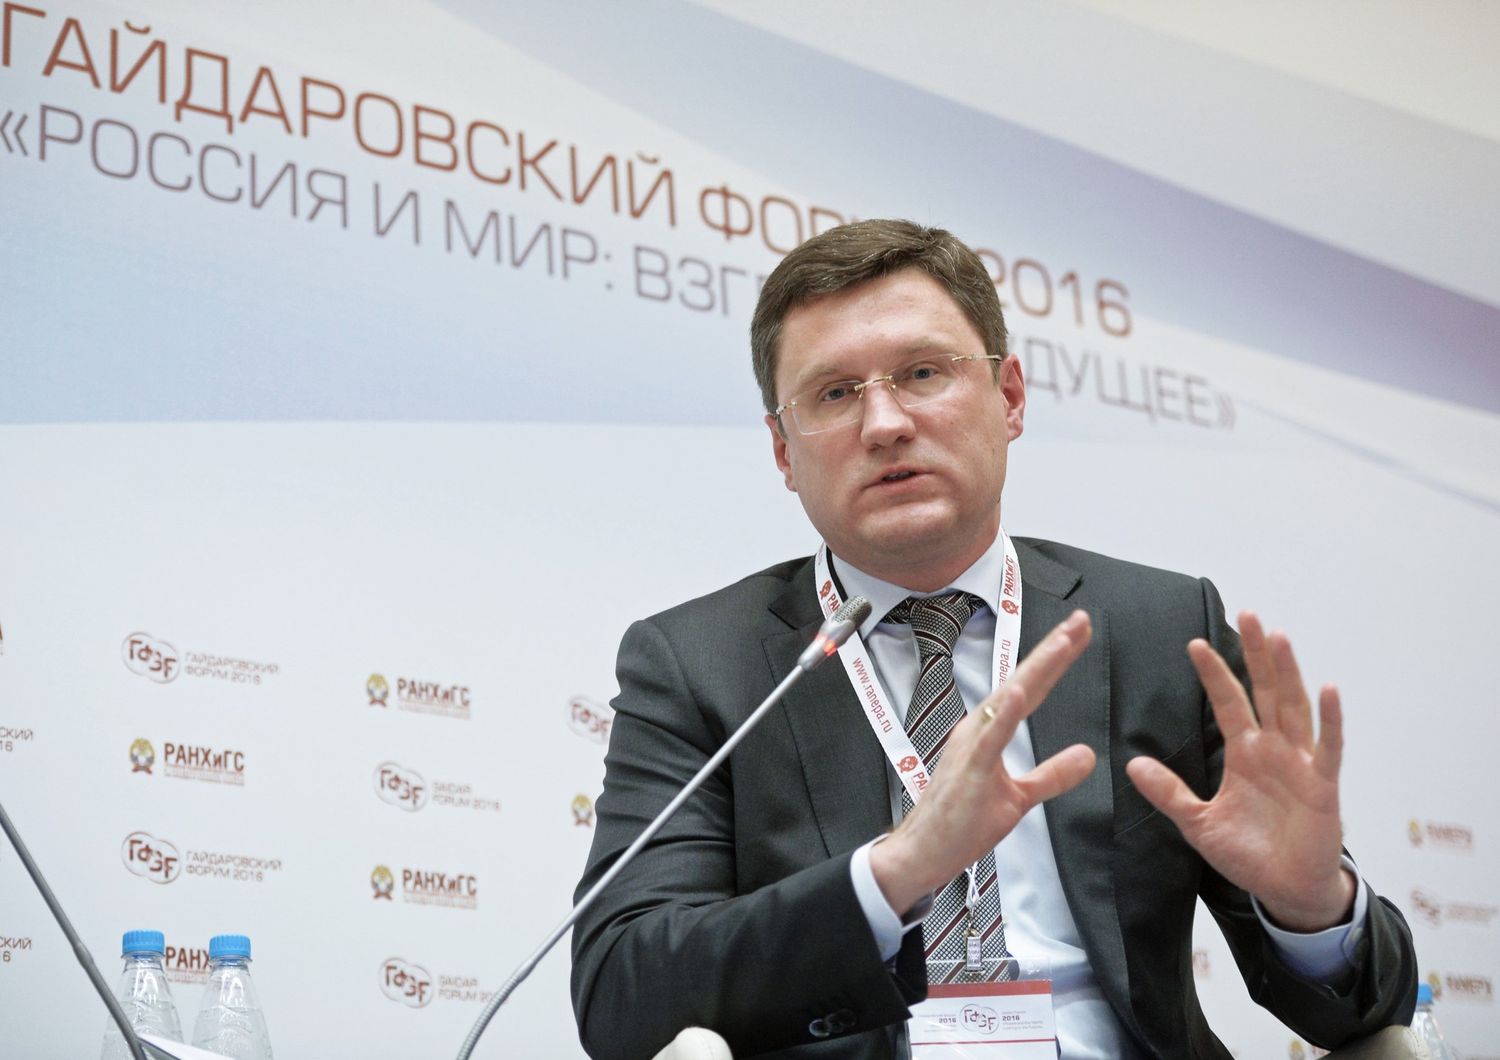 Alexander Novak ministro economia russo (Afp)&nbsp;